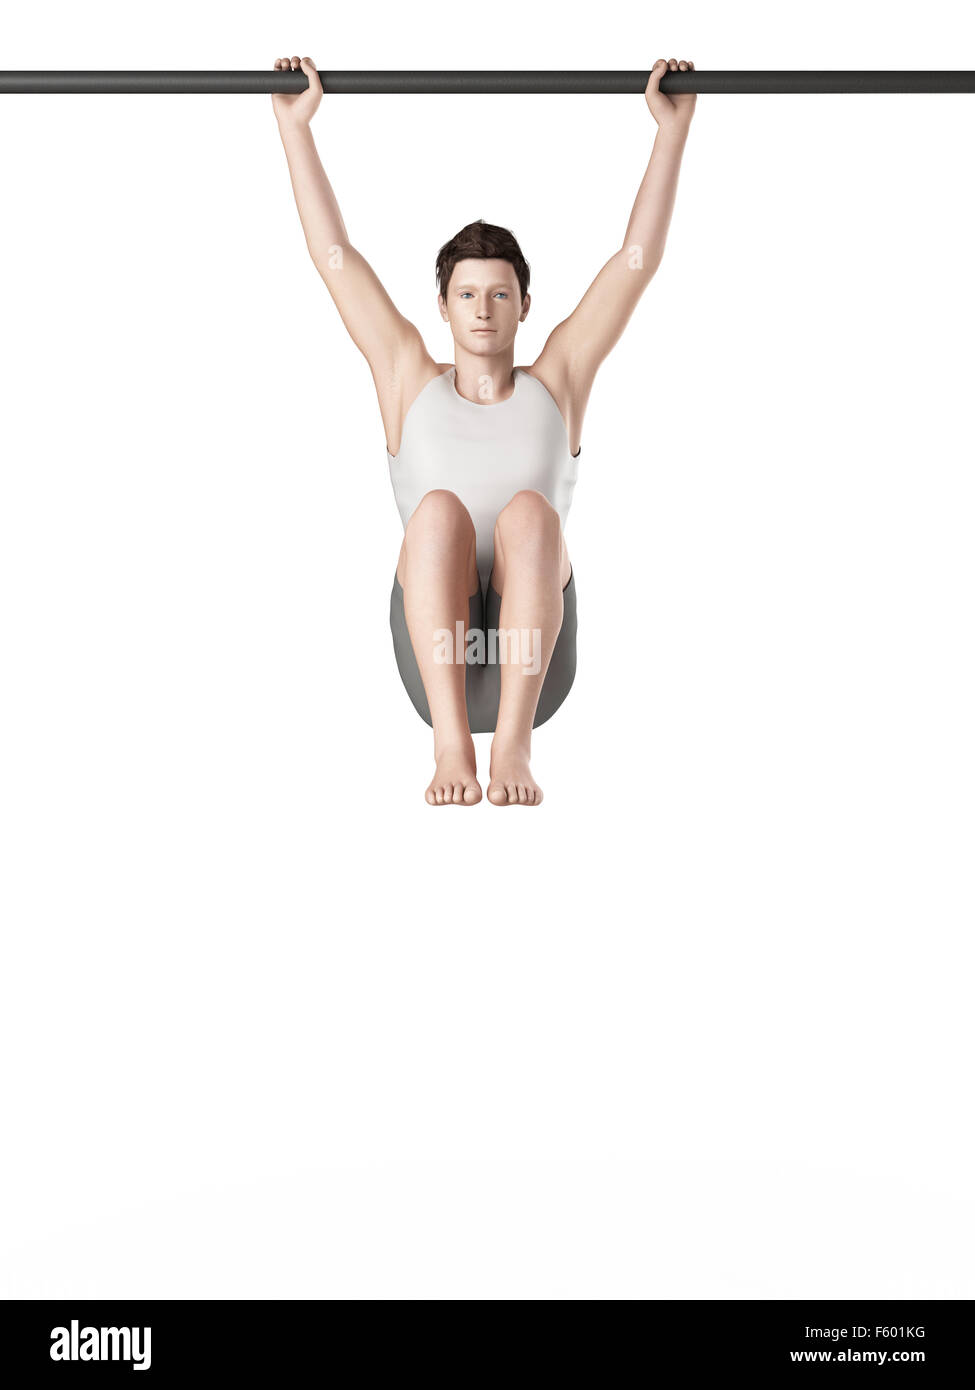 exercise illustration - hanging leg raises Stock Photo